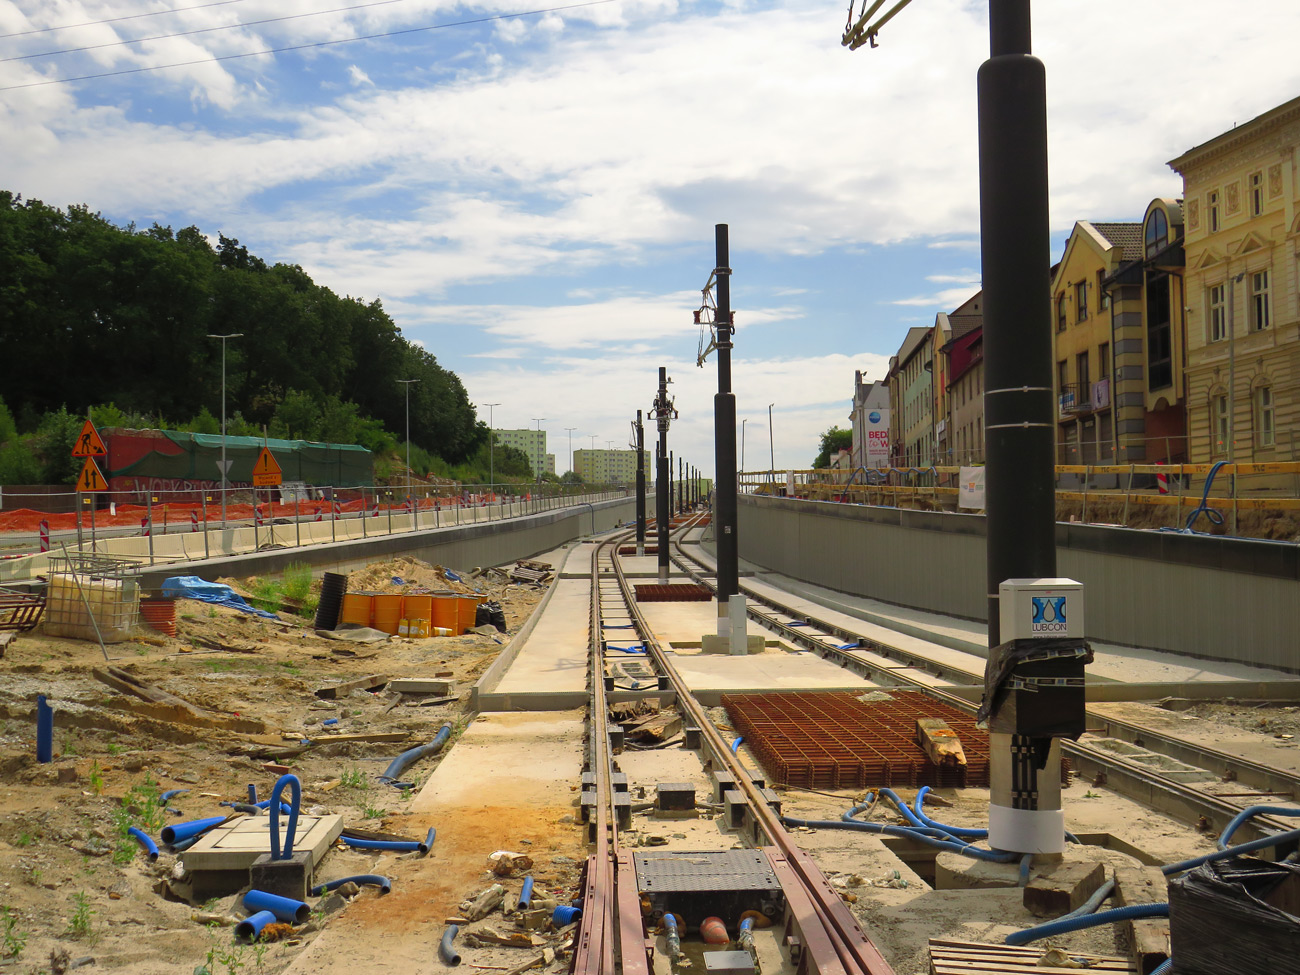 Bidgostie — Tramway Lines' Construction